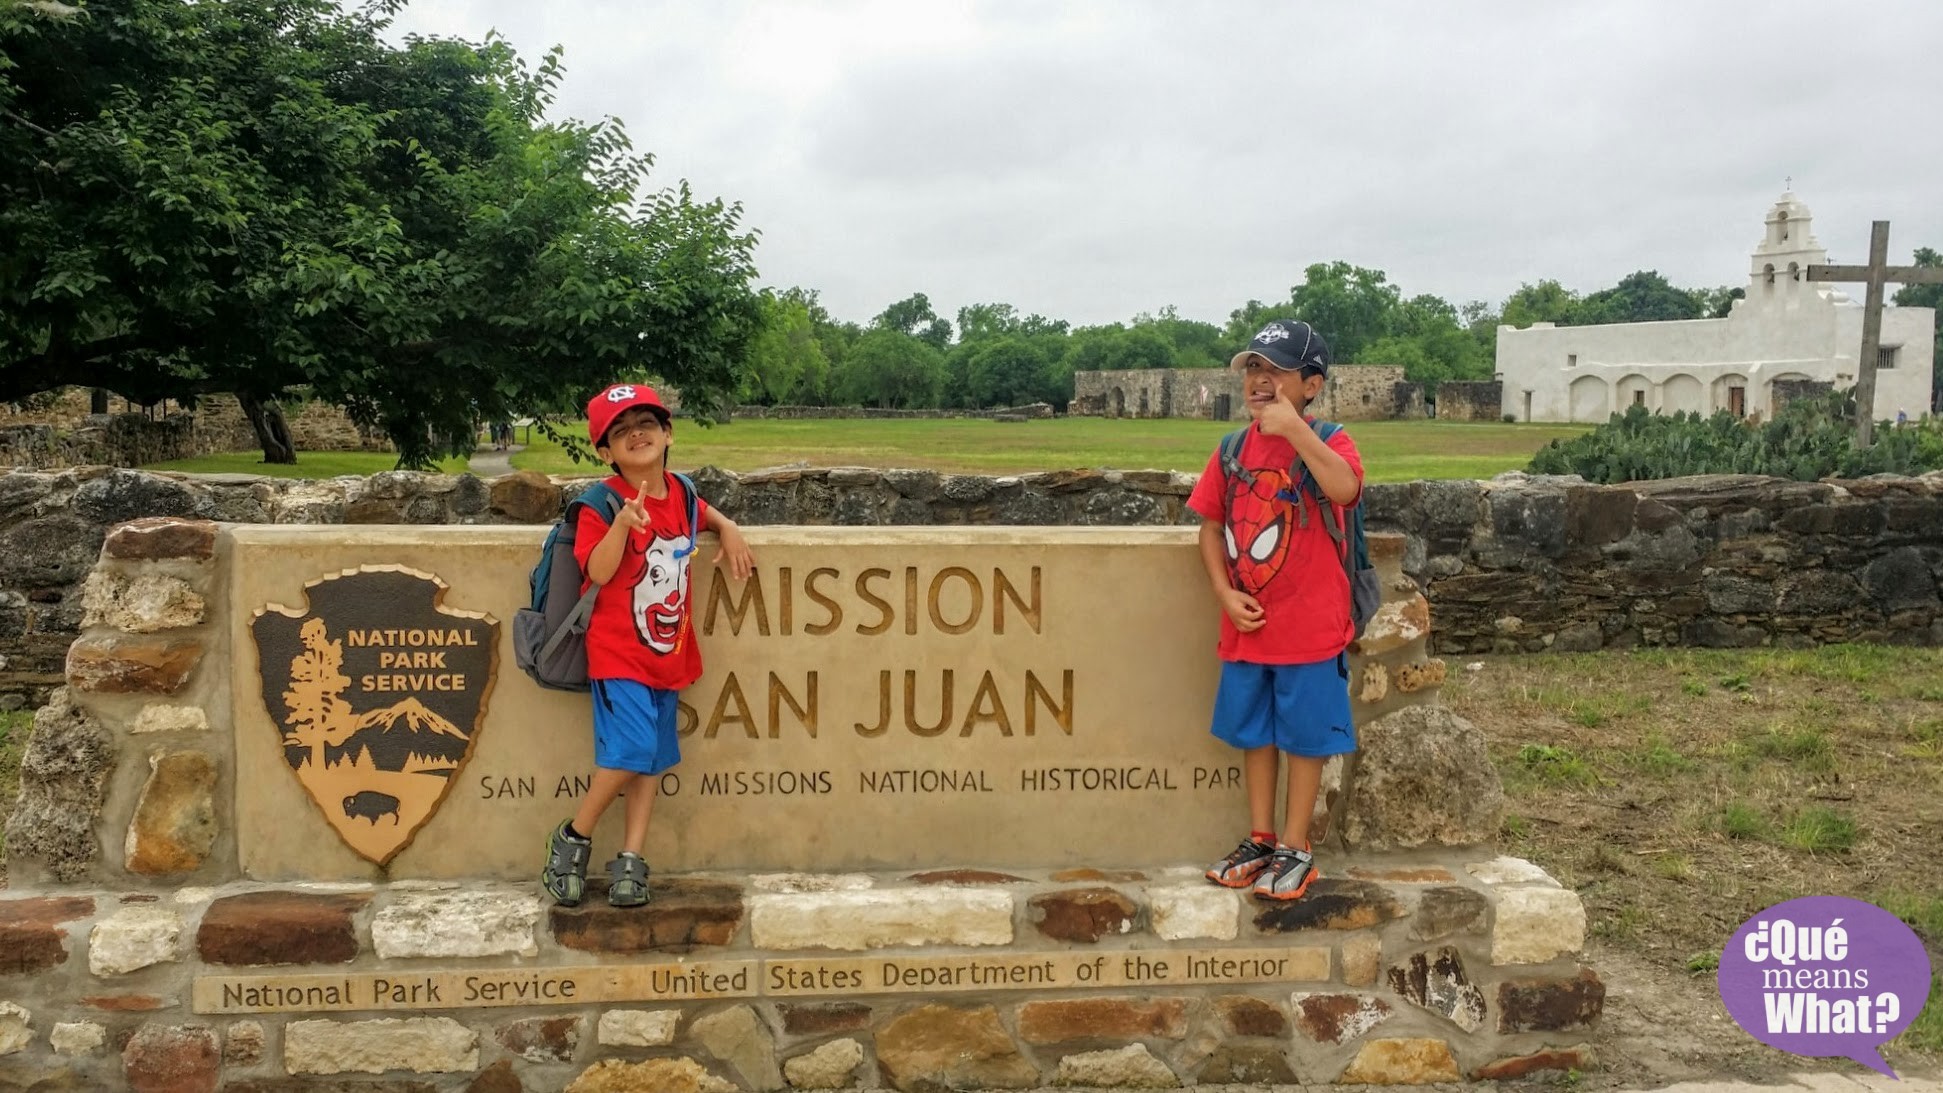 Mission San Juan National Park